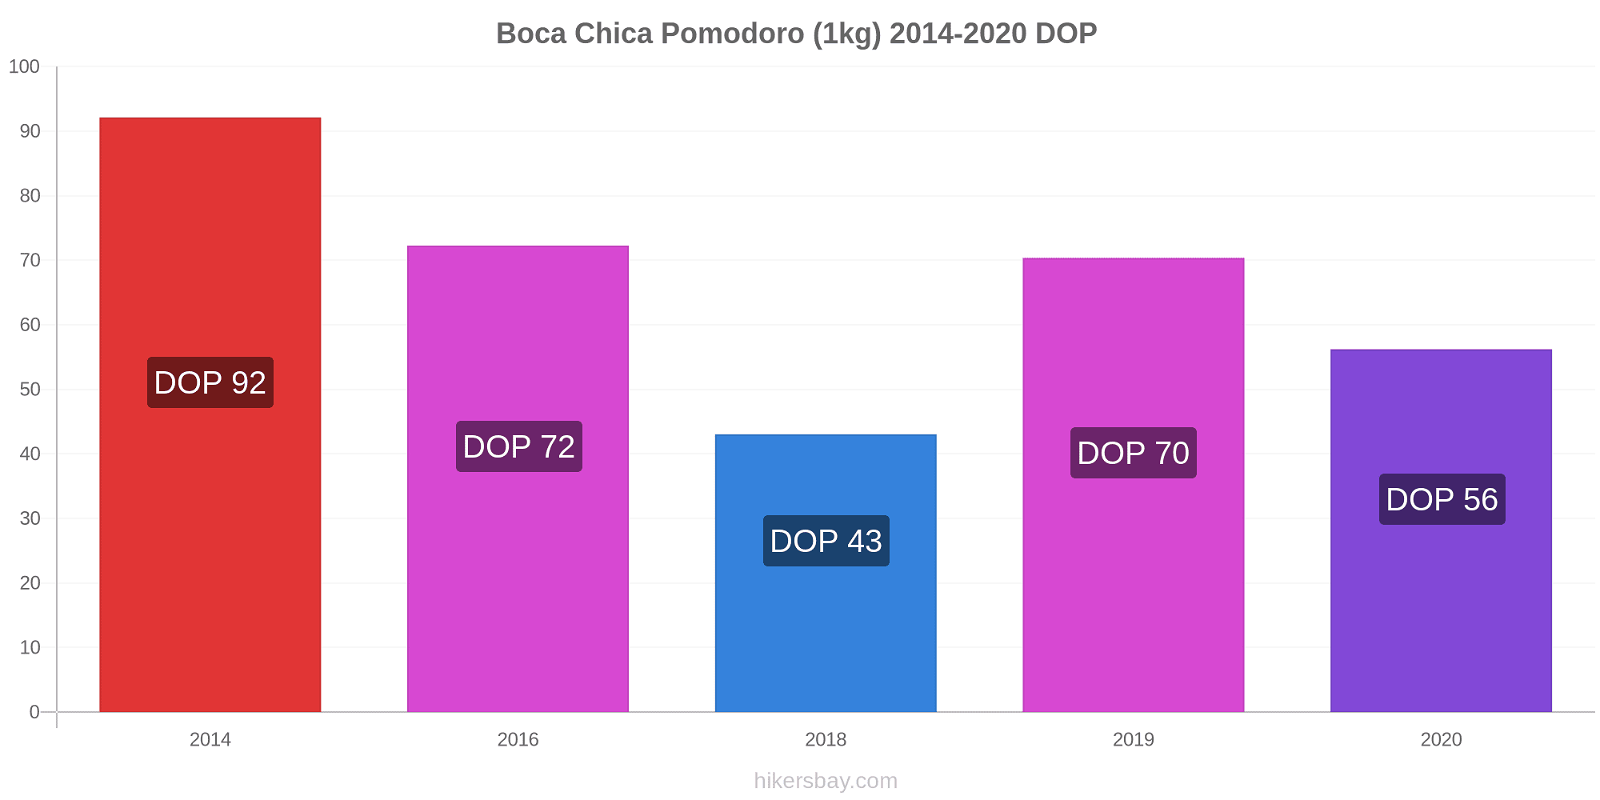 Boca Chica variazioni di prezzo Pomodoro (1kg) hikersbay.com